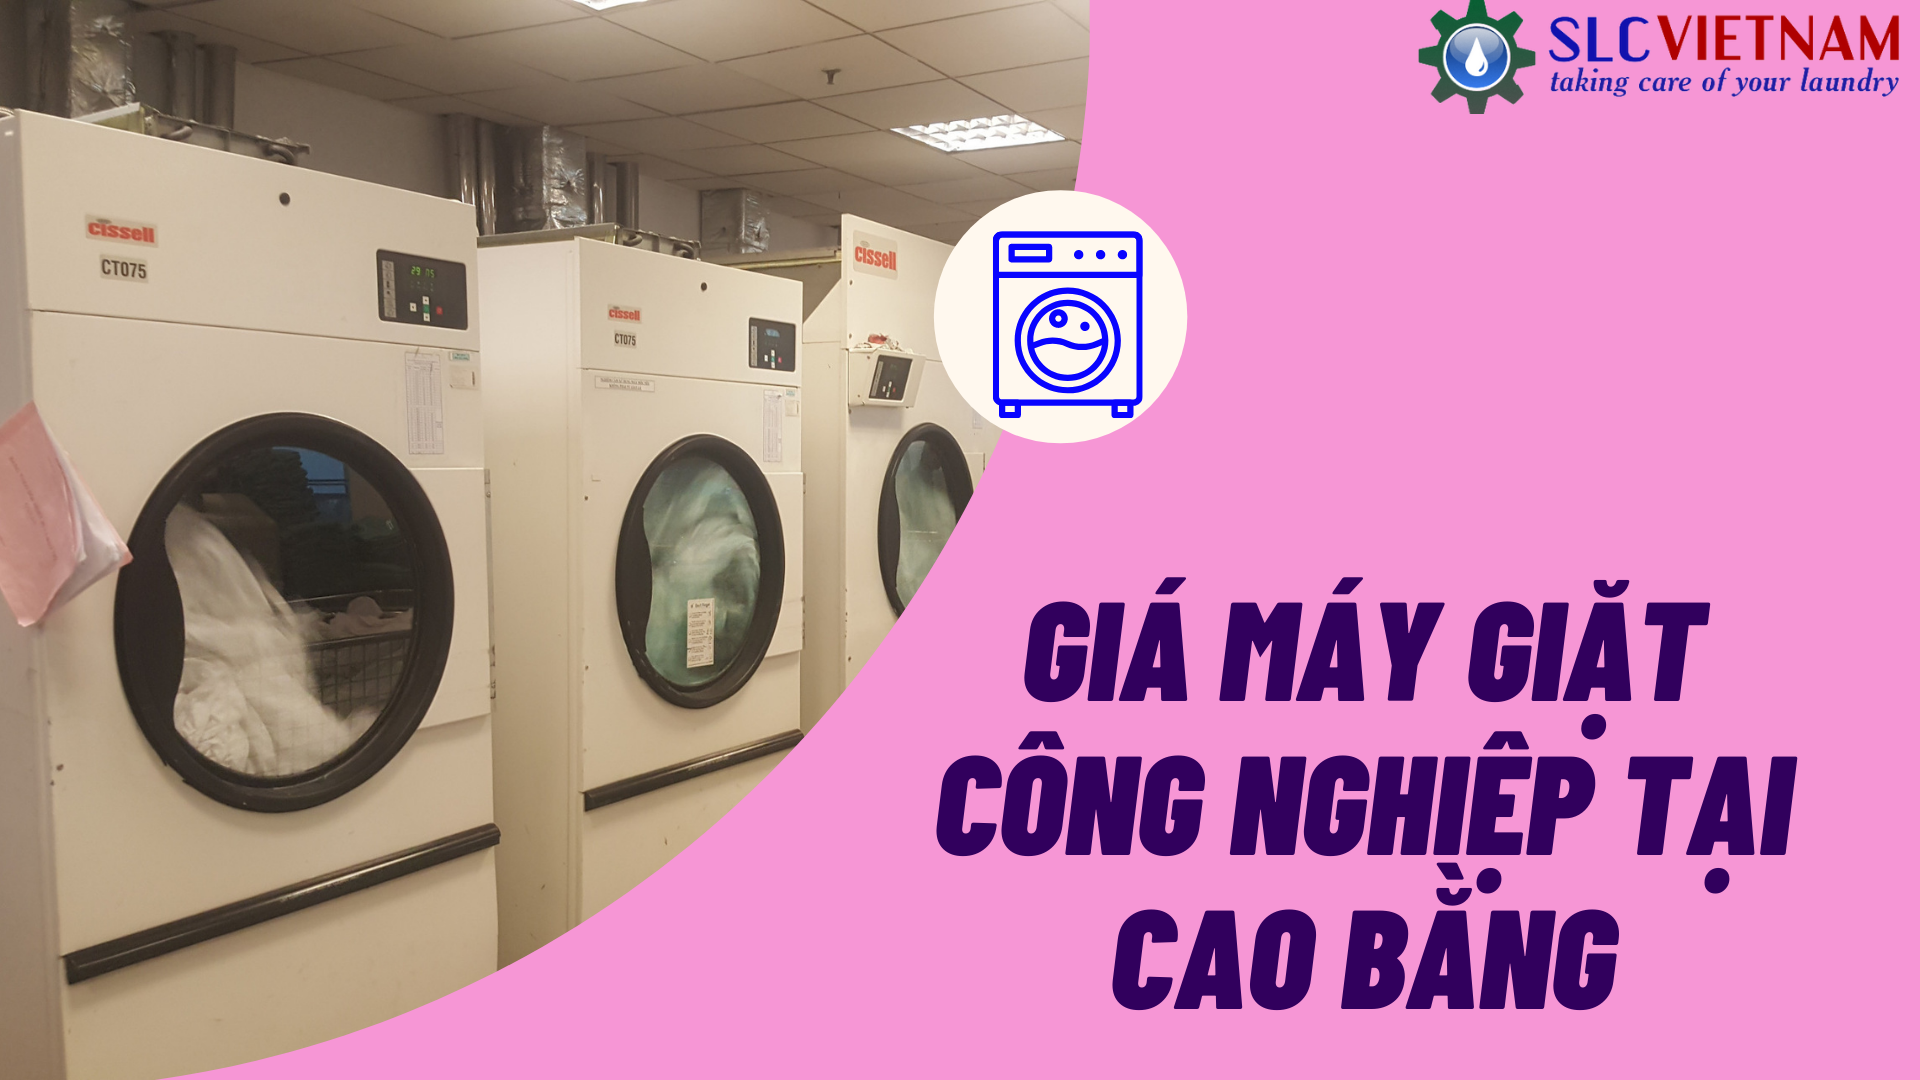 Báo giá máy giặt công nghiệp tại Cao Bằng